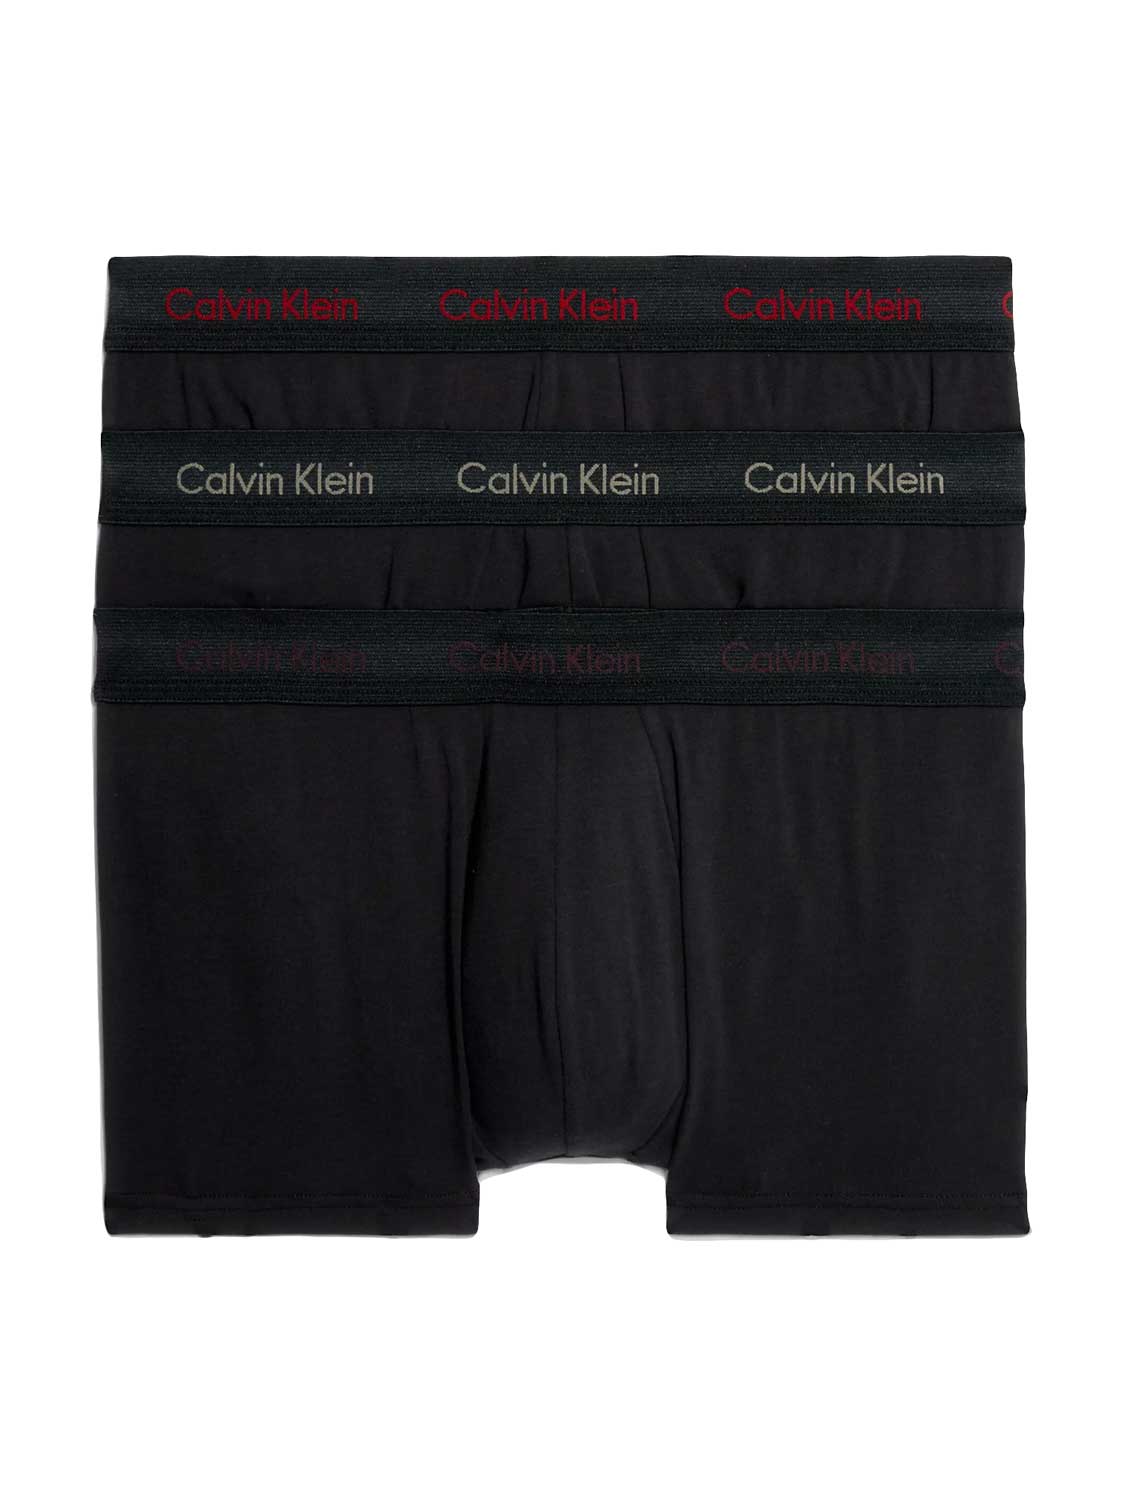 Calvin Klein Cotton Stretch Boxer Brief 3-Pack NB1770 Black Mens Underwear